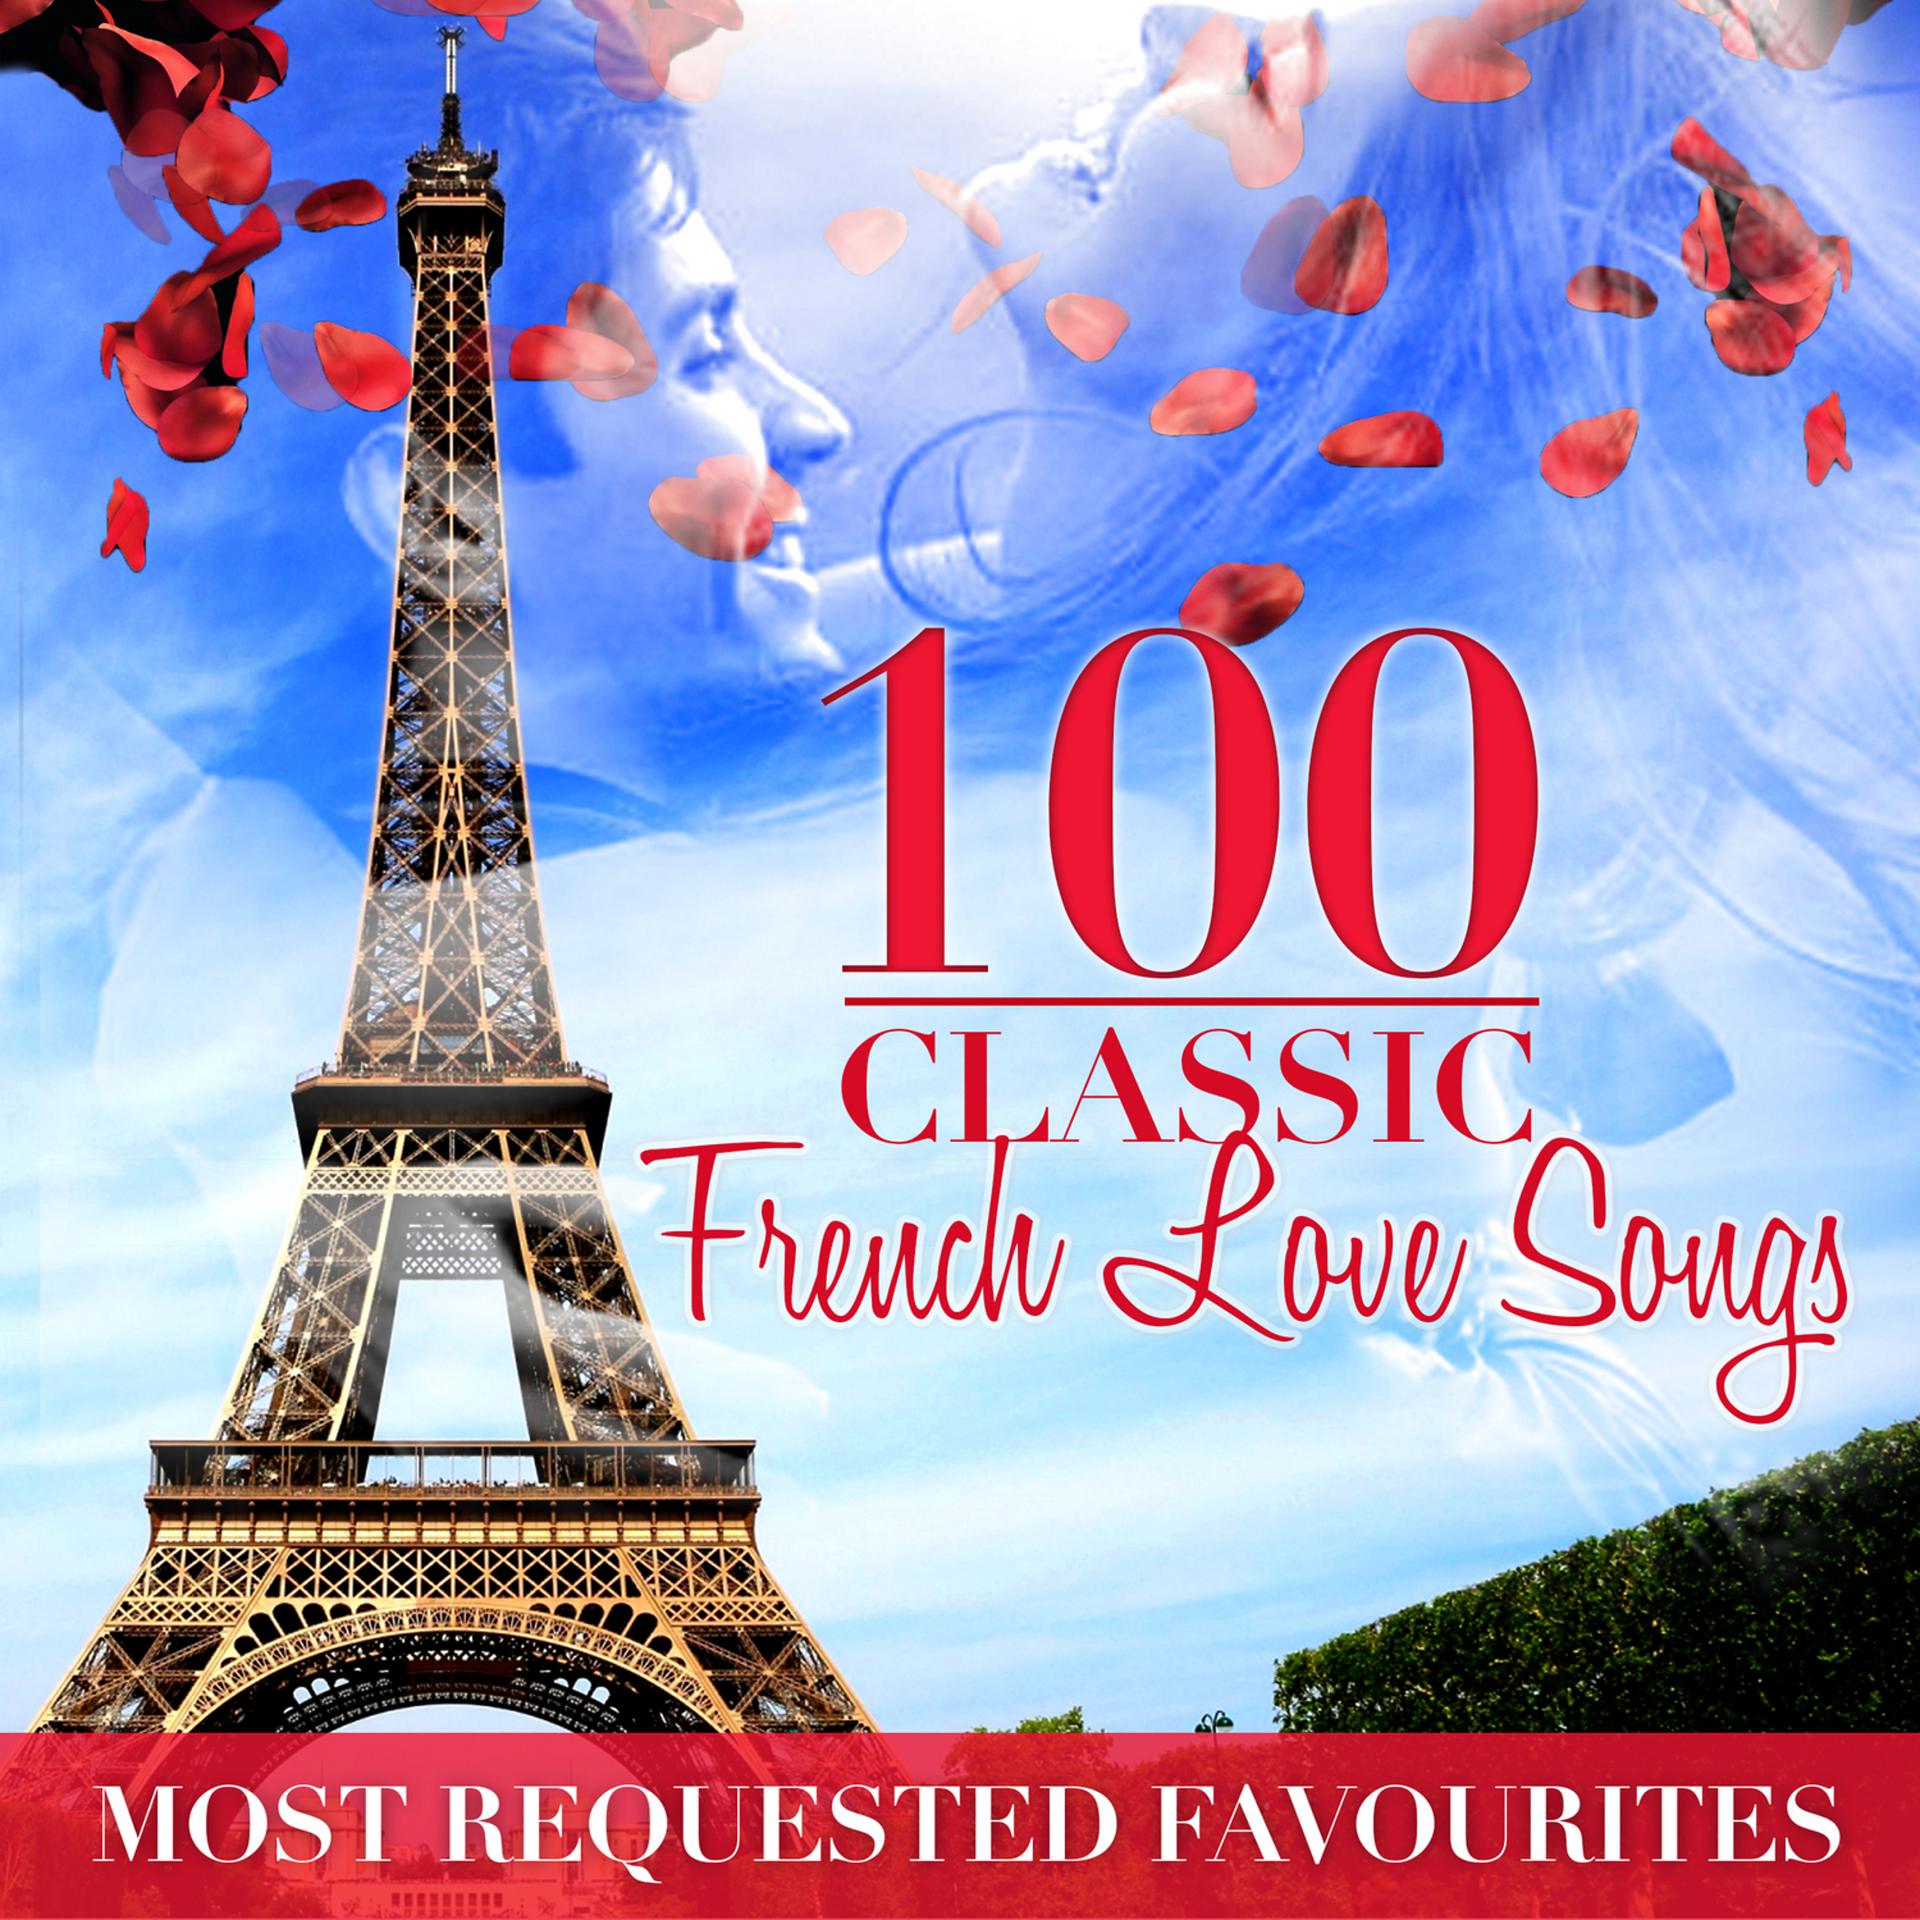 Хорошая французская музыка слушать. France Love Songs обложки. 100 French Love Songs. 100 Обложка. C'est l'amour: Romantic French Classics фото.